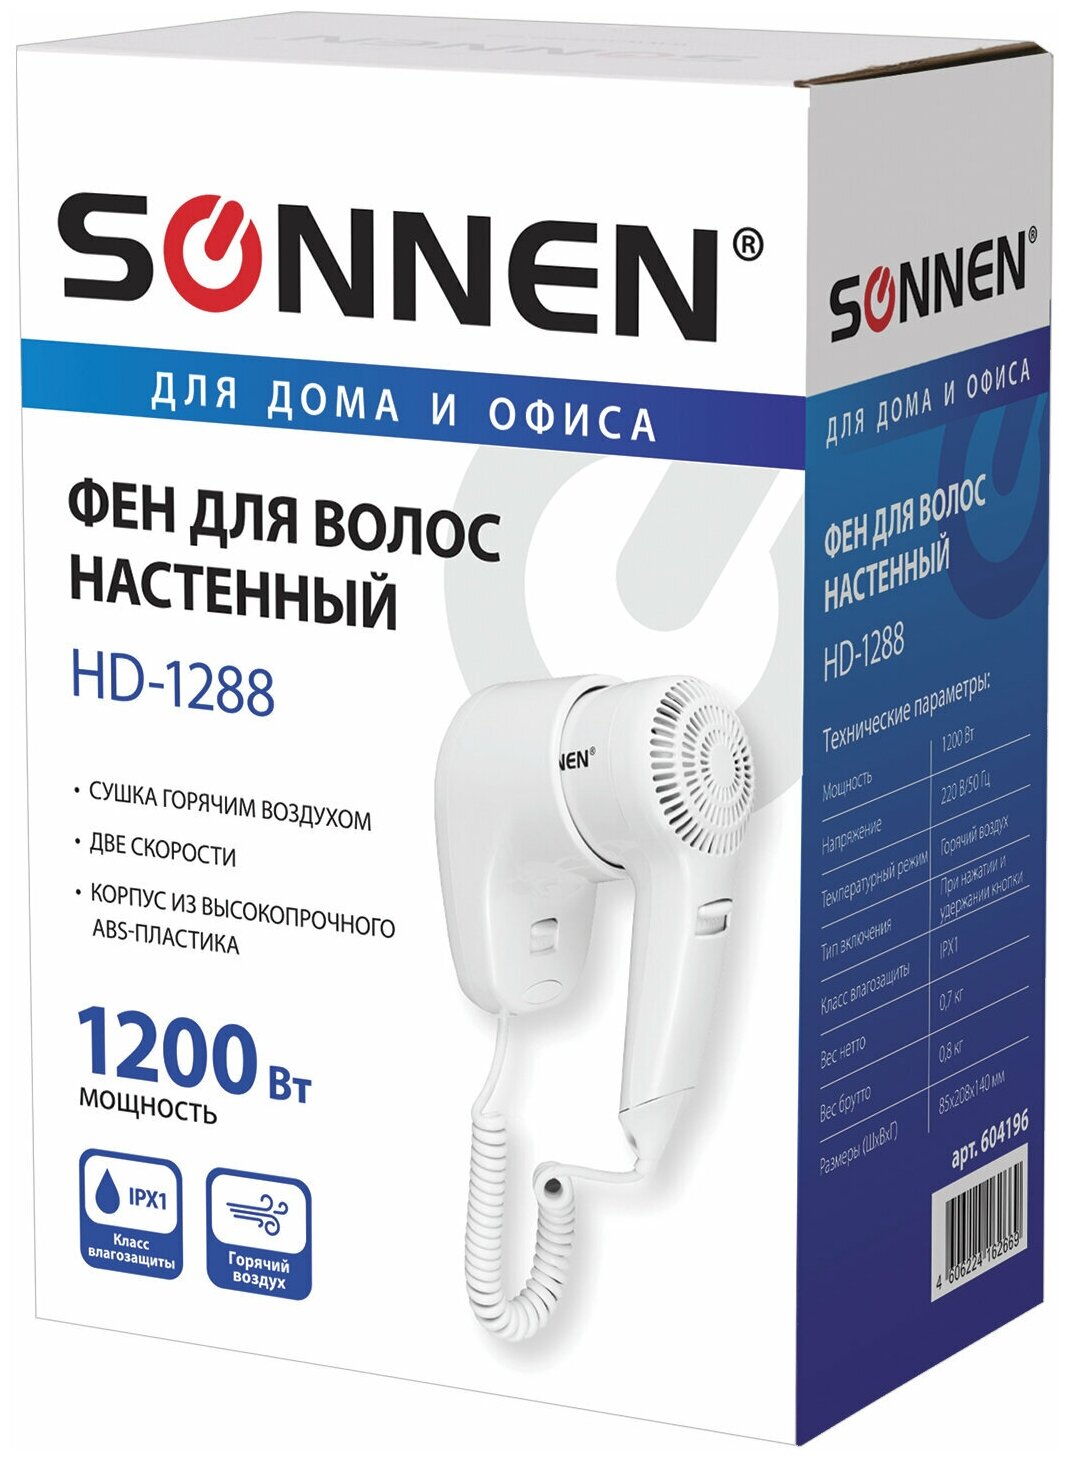 Фен для волос настенный SONNEN HD-1288, 1200 Вт, пластиковый корпус, 2 скорости, белый, 604196 - фото №7